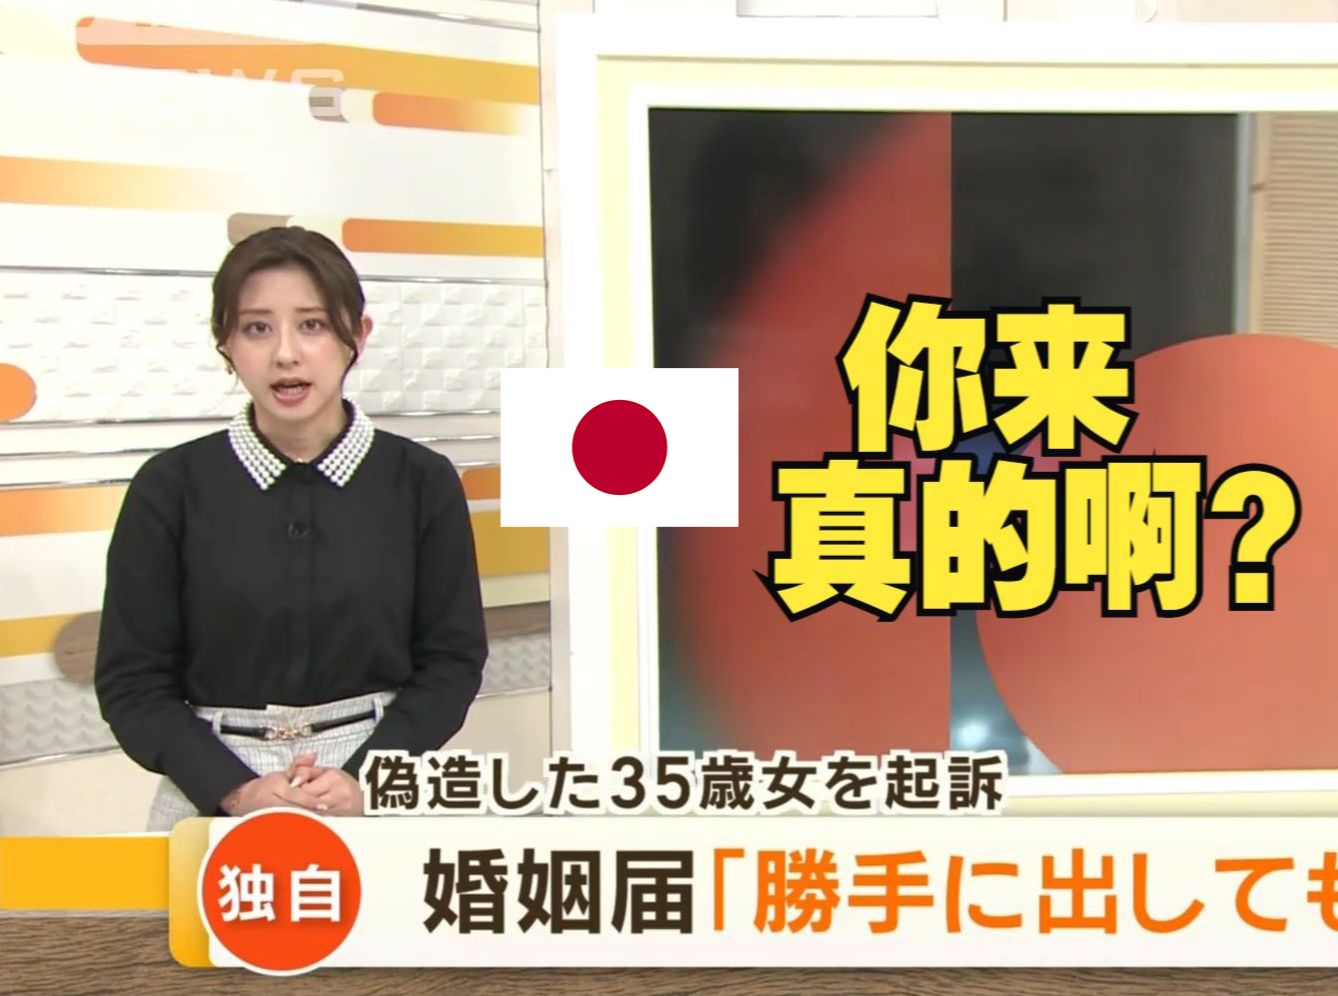 我去你好变态啊！日本女子擅自提交结婚申请被警方逮捕：男子表示完全不知情(中日双语)(24/04/18)